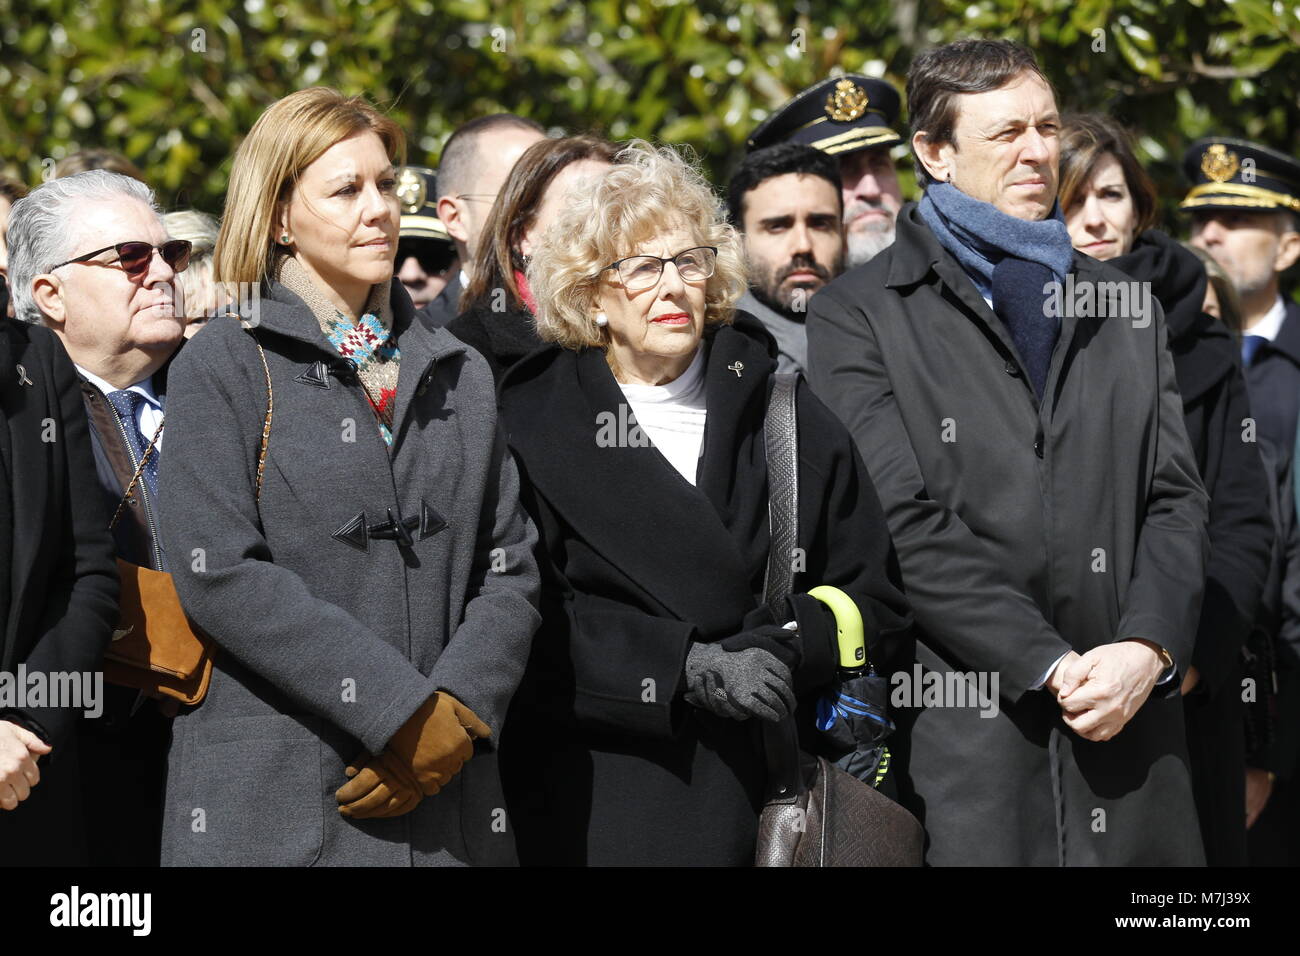 Madrid, Spagna. 11 Marzo 2018.durante un omaggio alla memoria delle vittime dell'attentato del 11-M 2004, presso la foresta del Parco del Retiro domenica 11 marzo 2018. Credito: Gtres Información más Comuniación on line, S.L./Alamy Live News Foto Stock